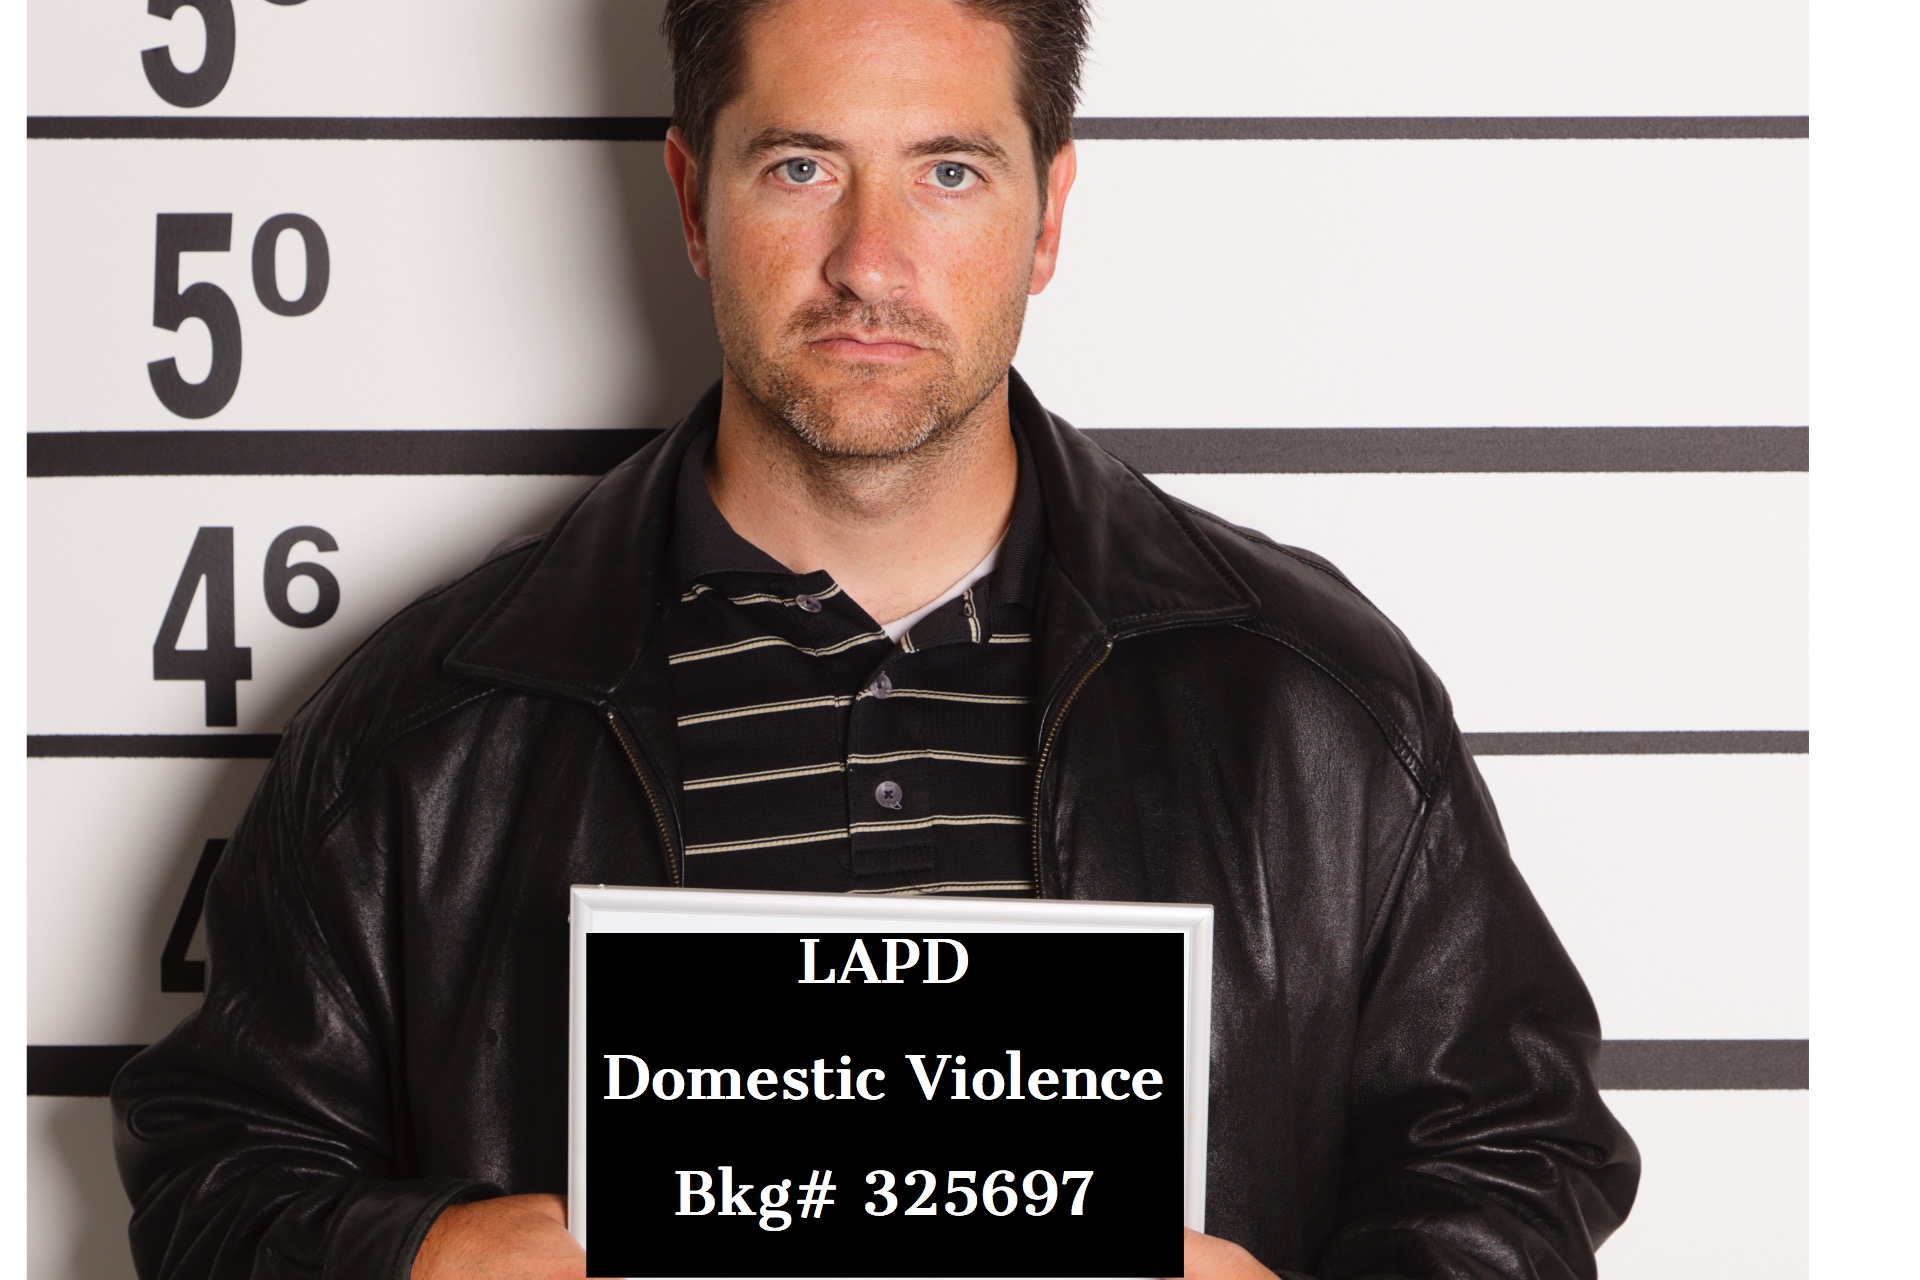 CRIMINAL DEFENSE ATTORNEY – Top criminal defense attorney